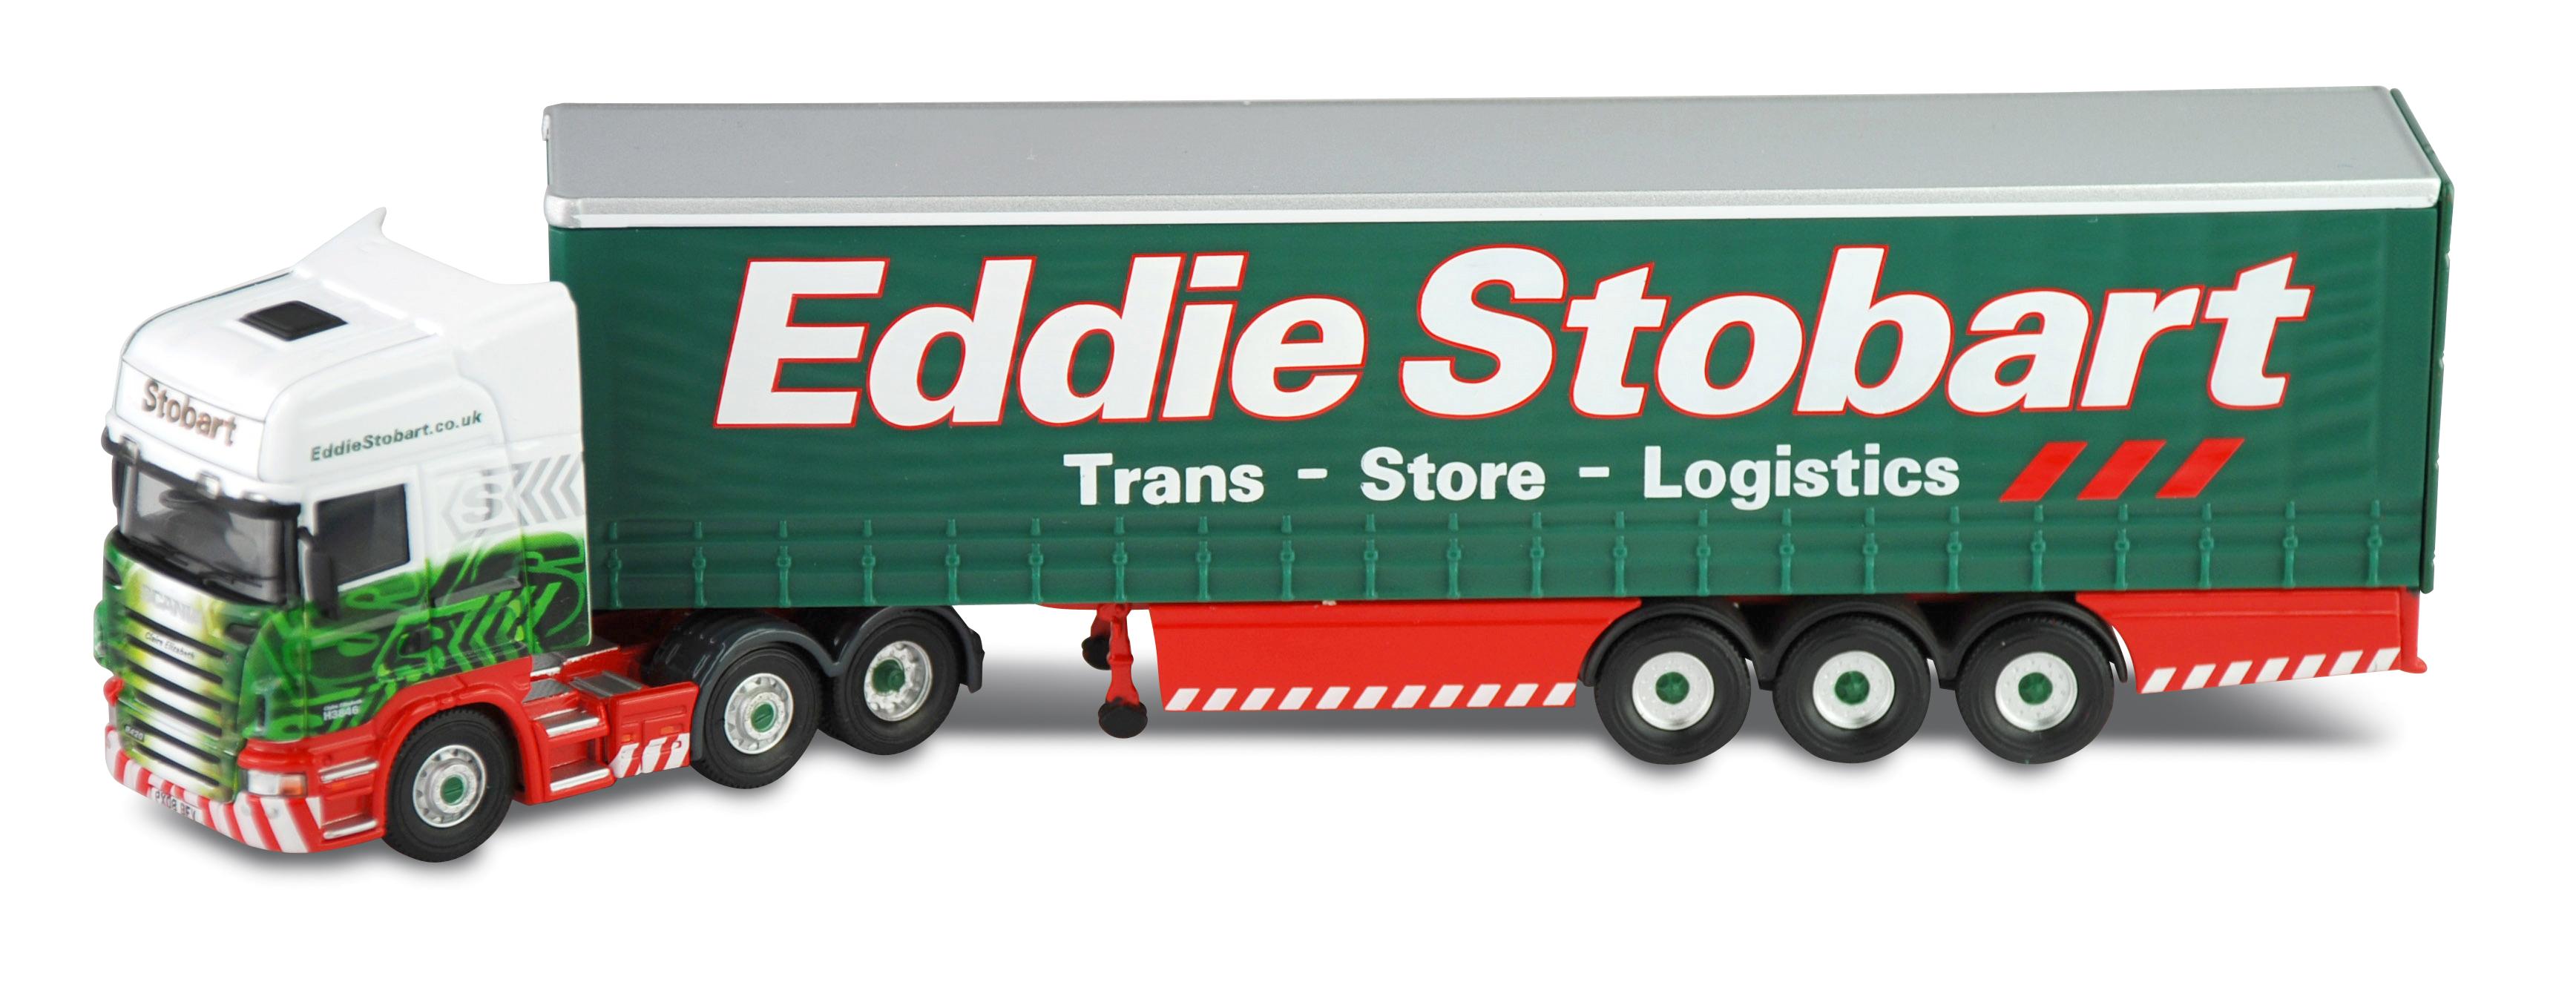 Eddie Stobart Logo photo - 1